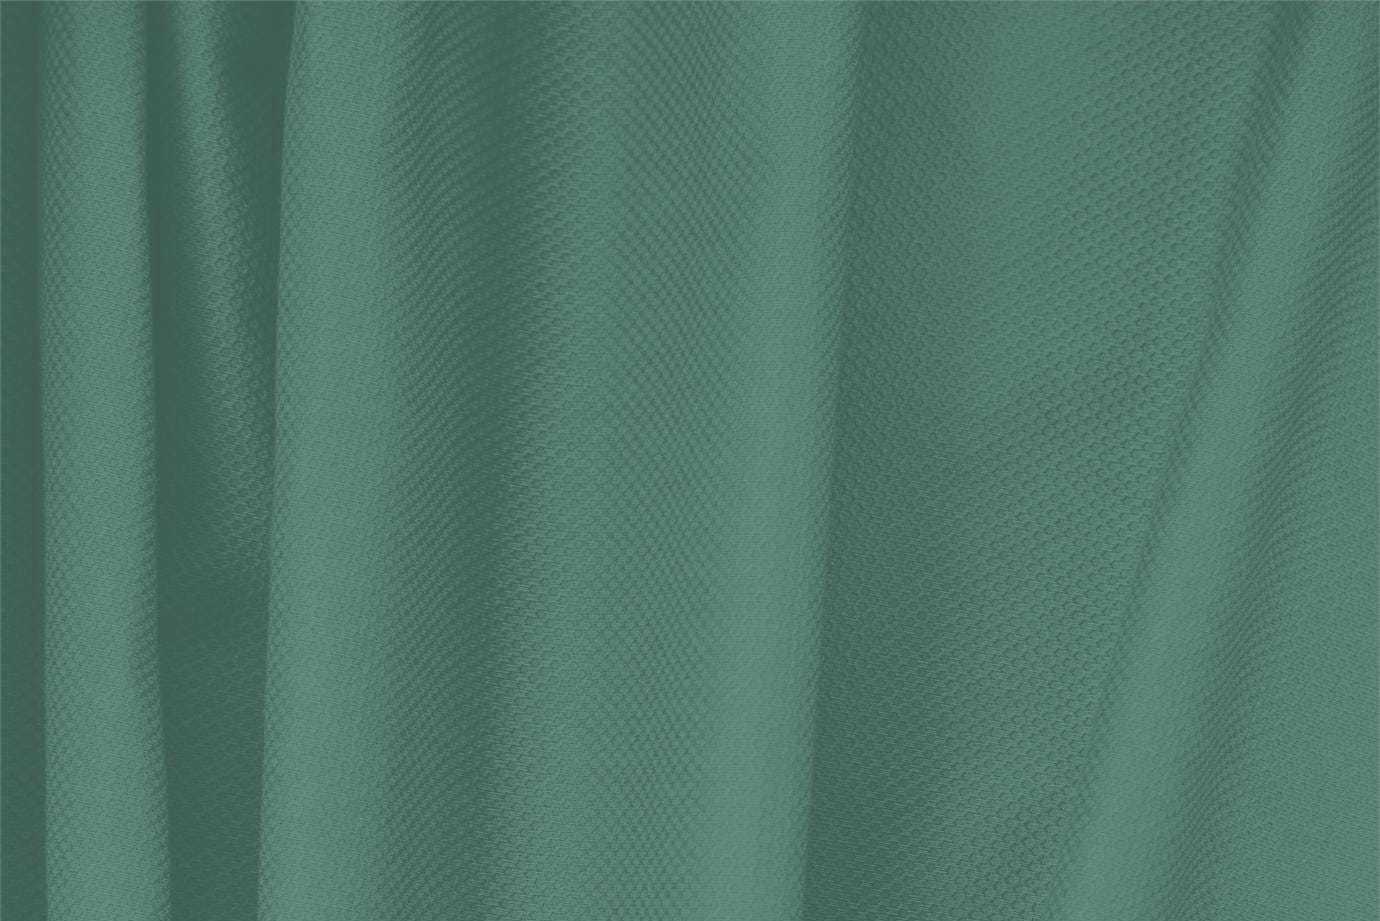 Tissu Piquet Stretch Vert frelon en Coton, Stretch pour vêtements